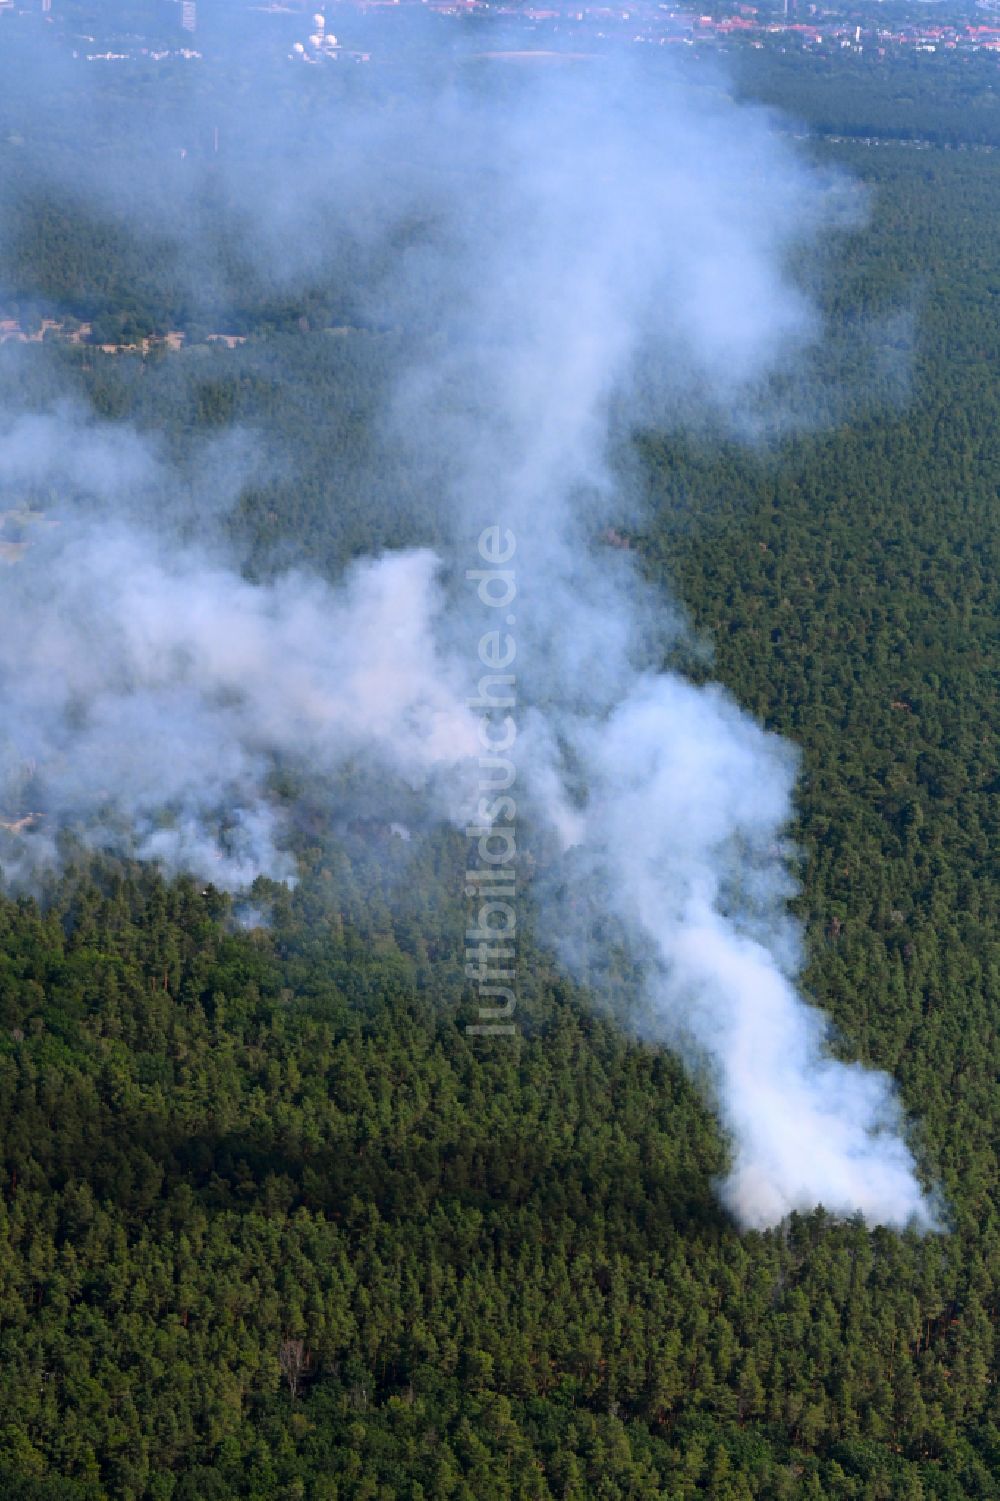 Luftbild Berlin - Rauchschwaden eines Brandes im Baumbestand eines Waldgebietes in Berlin, Deutschland